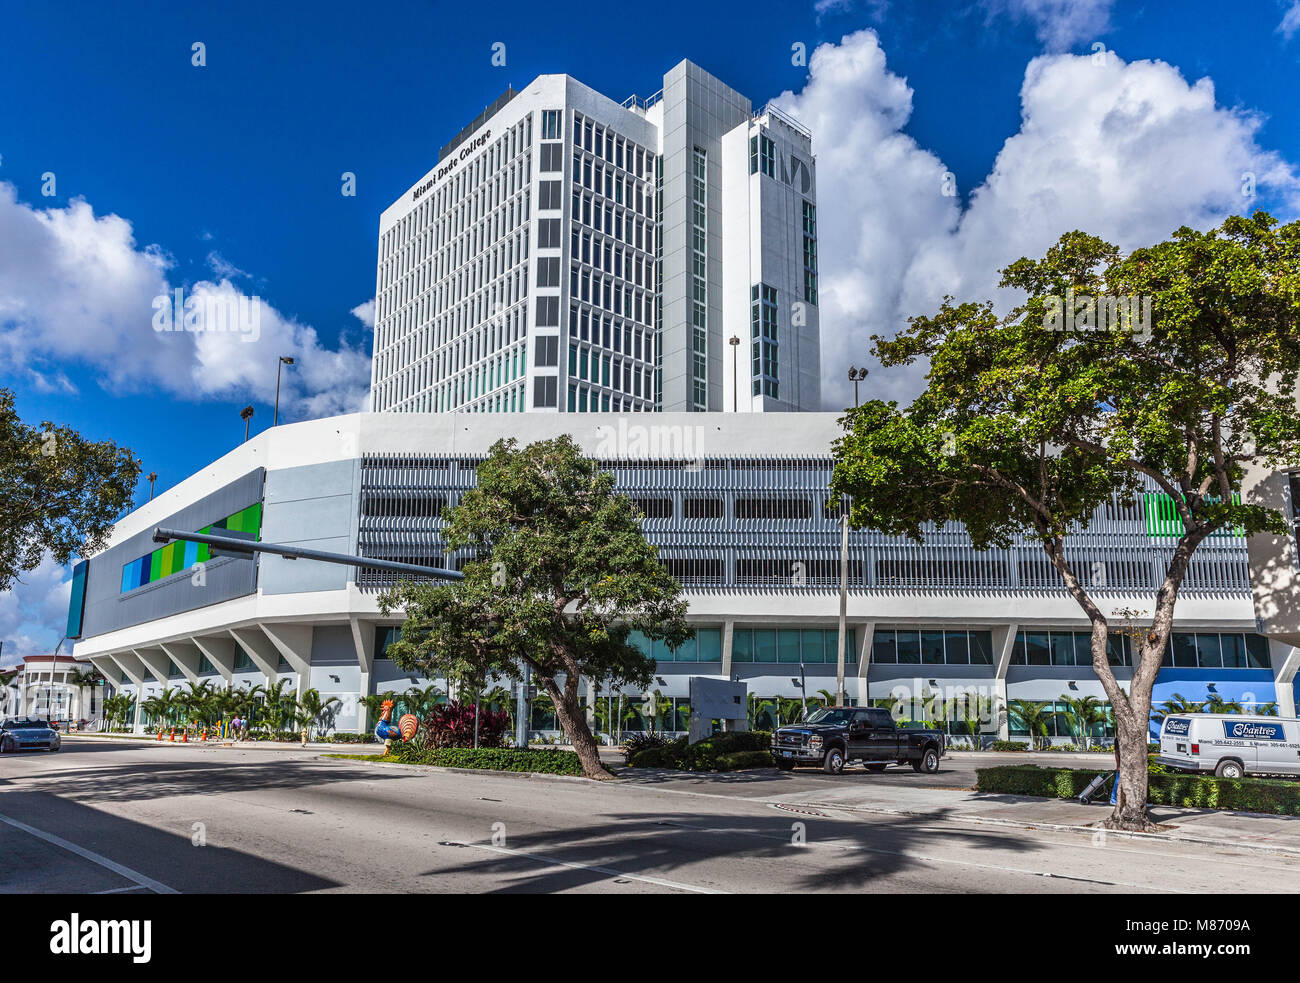 Miami Dade Campus Interamerican Campus, Little Havana, 627 SW 27 Ave, Miami, FL 33135, USA. Stockfoto